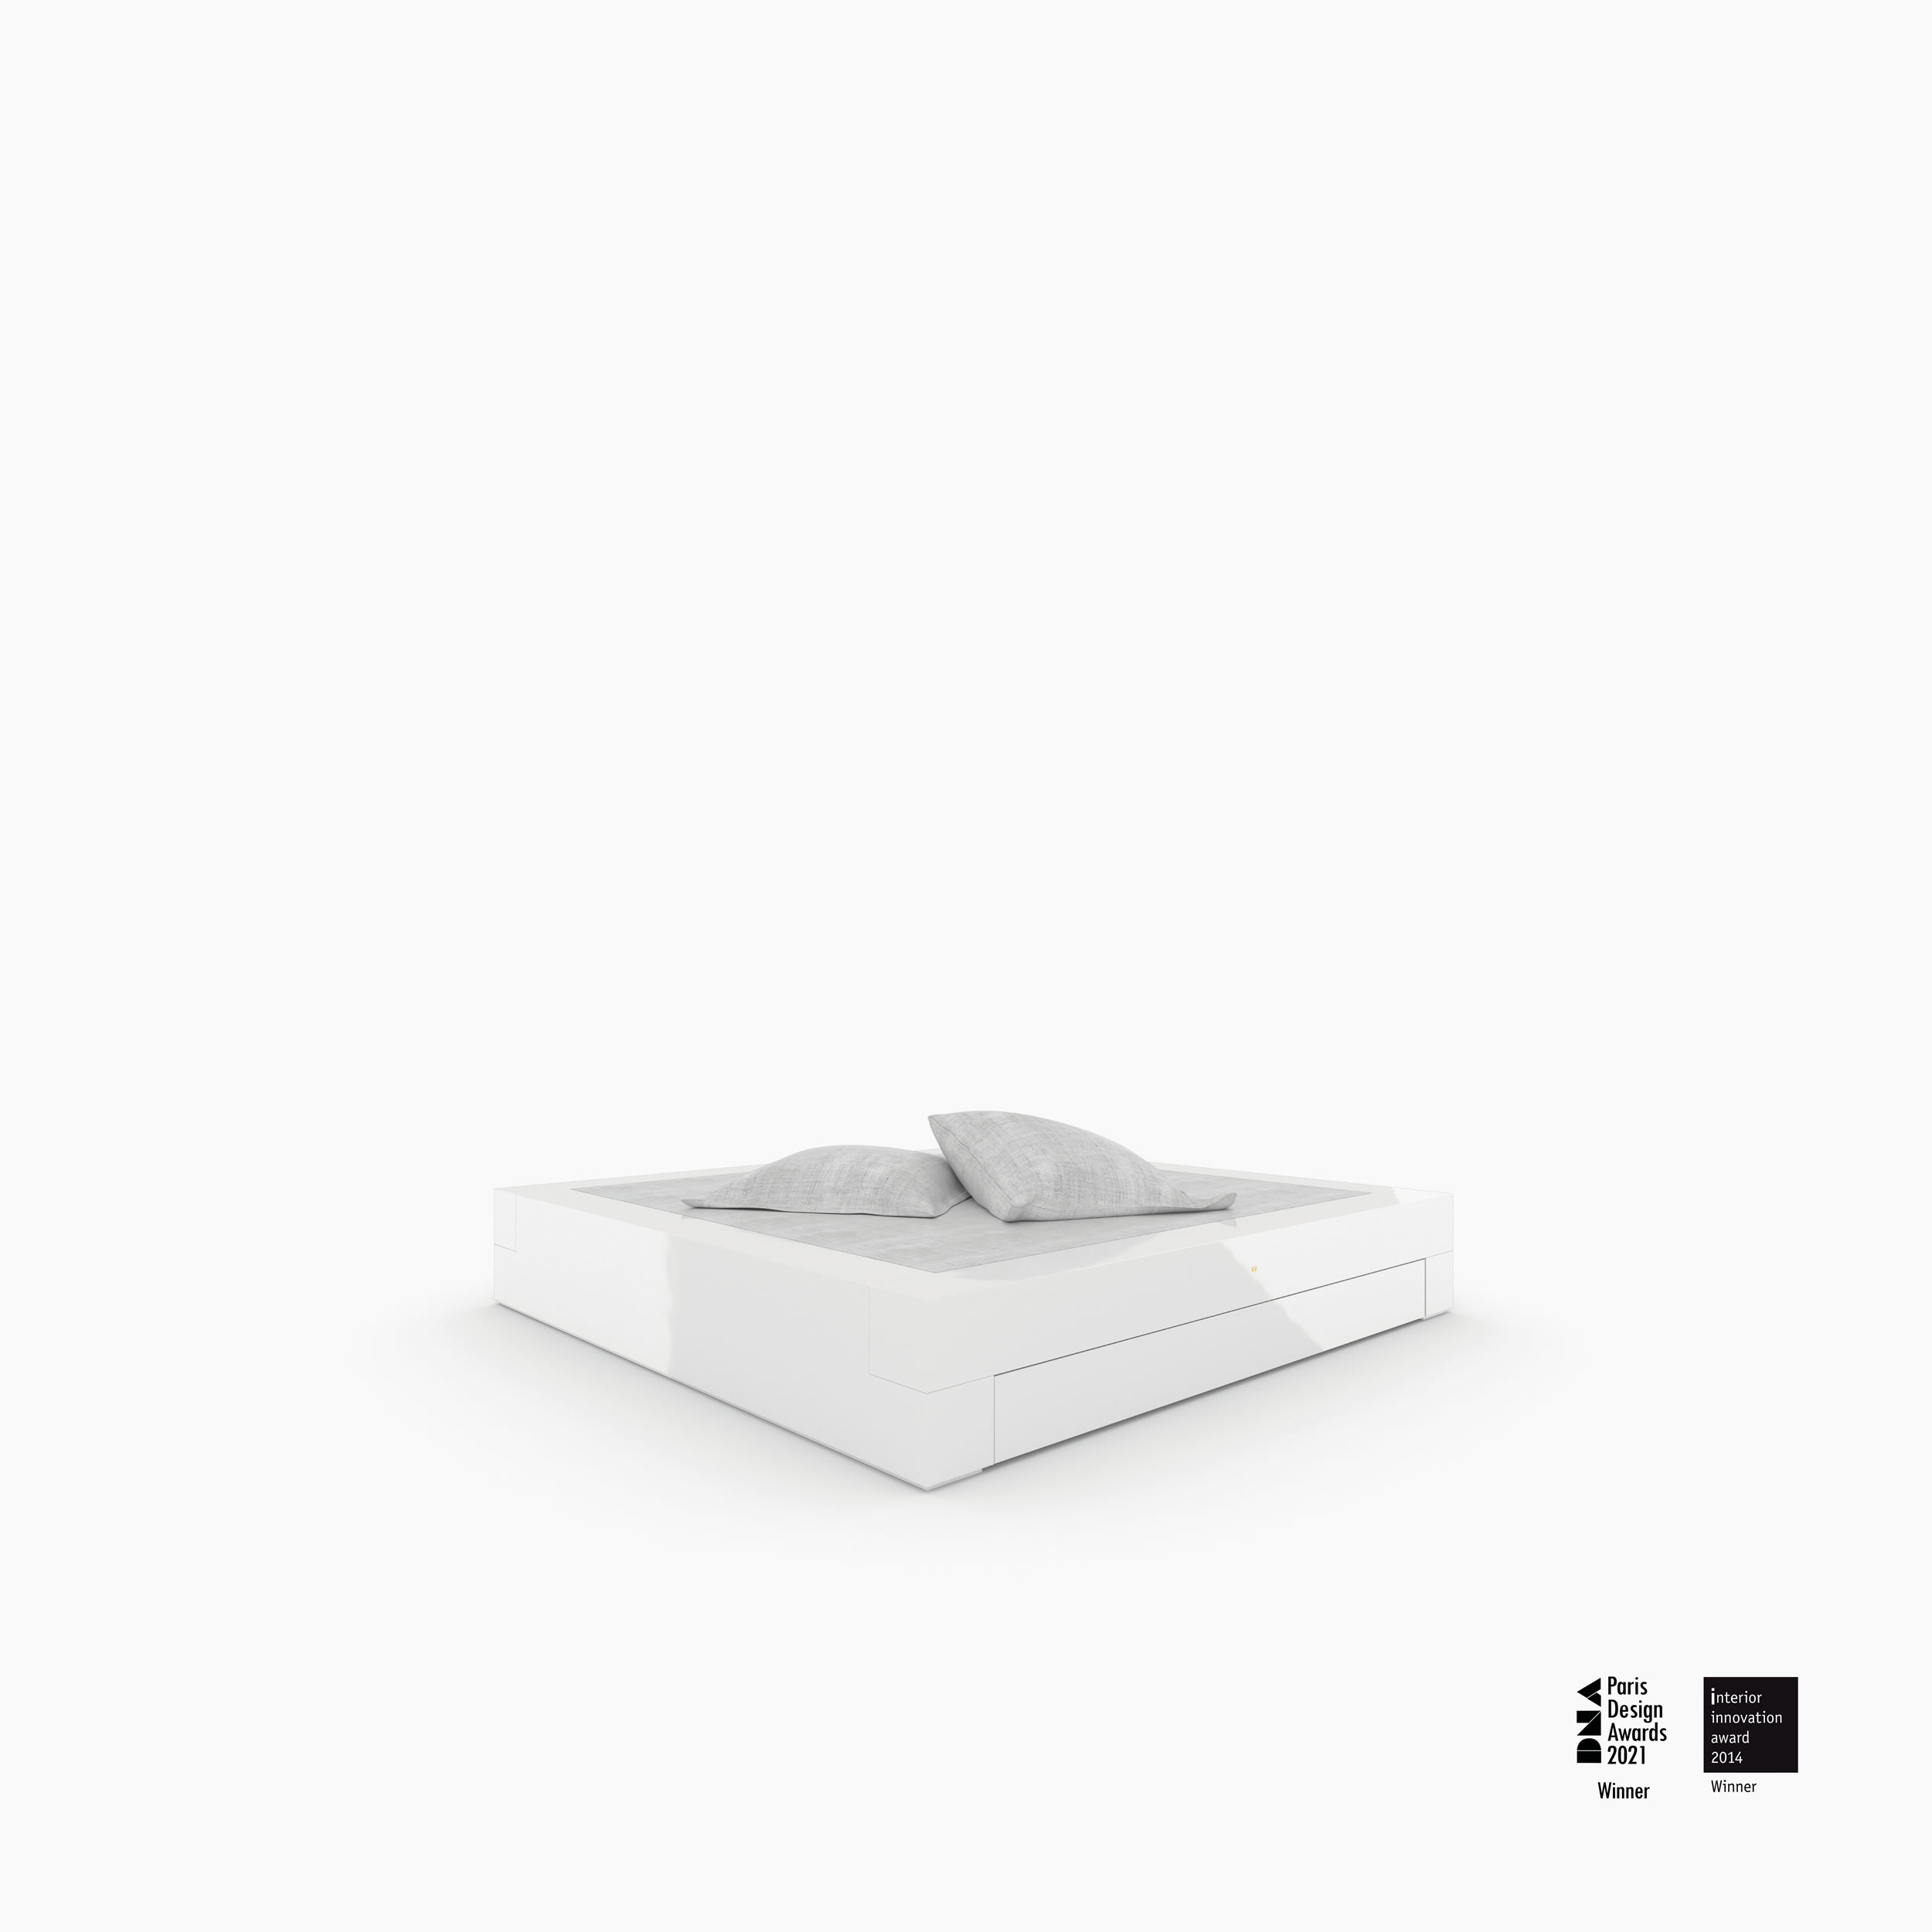 Bett quadratisch weiss contemporarydesign Schlafzimmer interior ispiration Betten FS 2 FELIX SCHWAKE